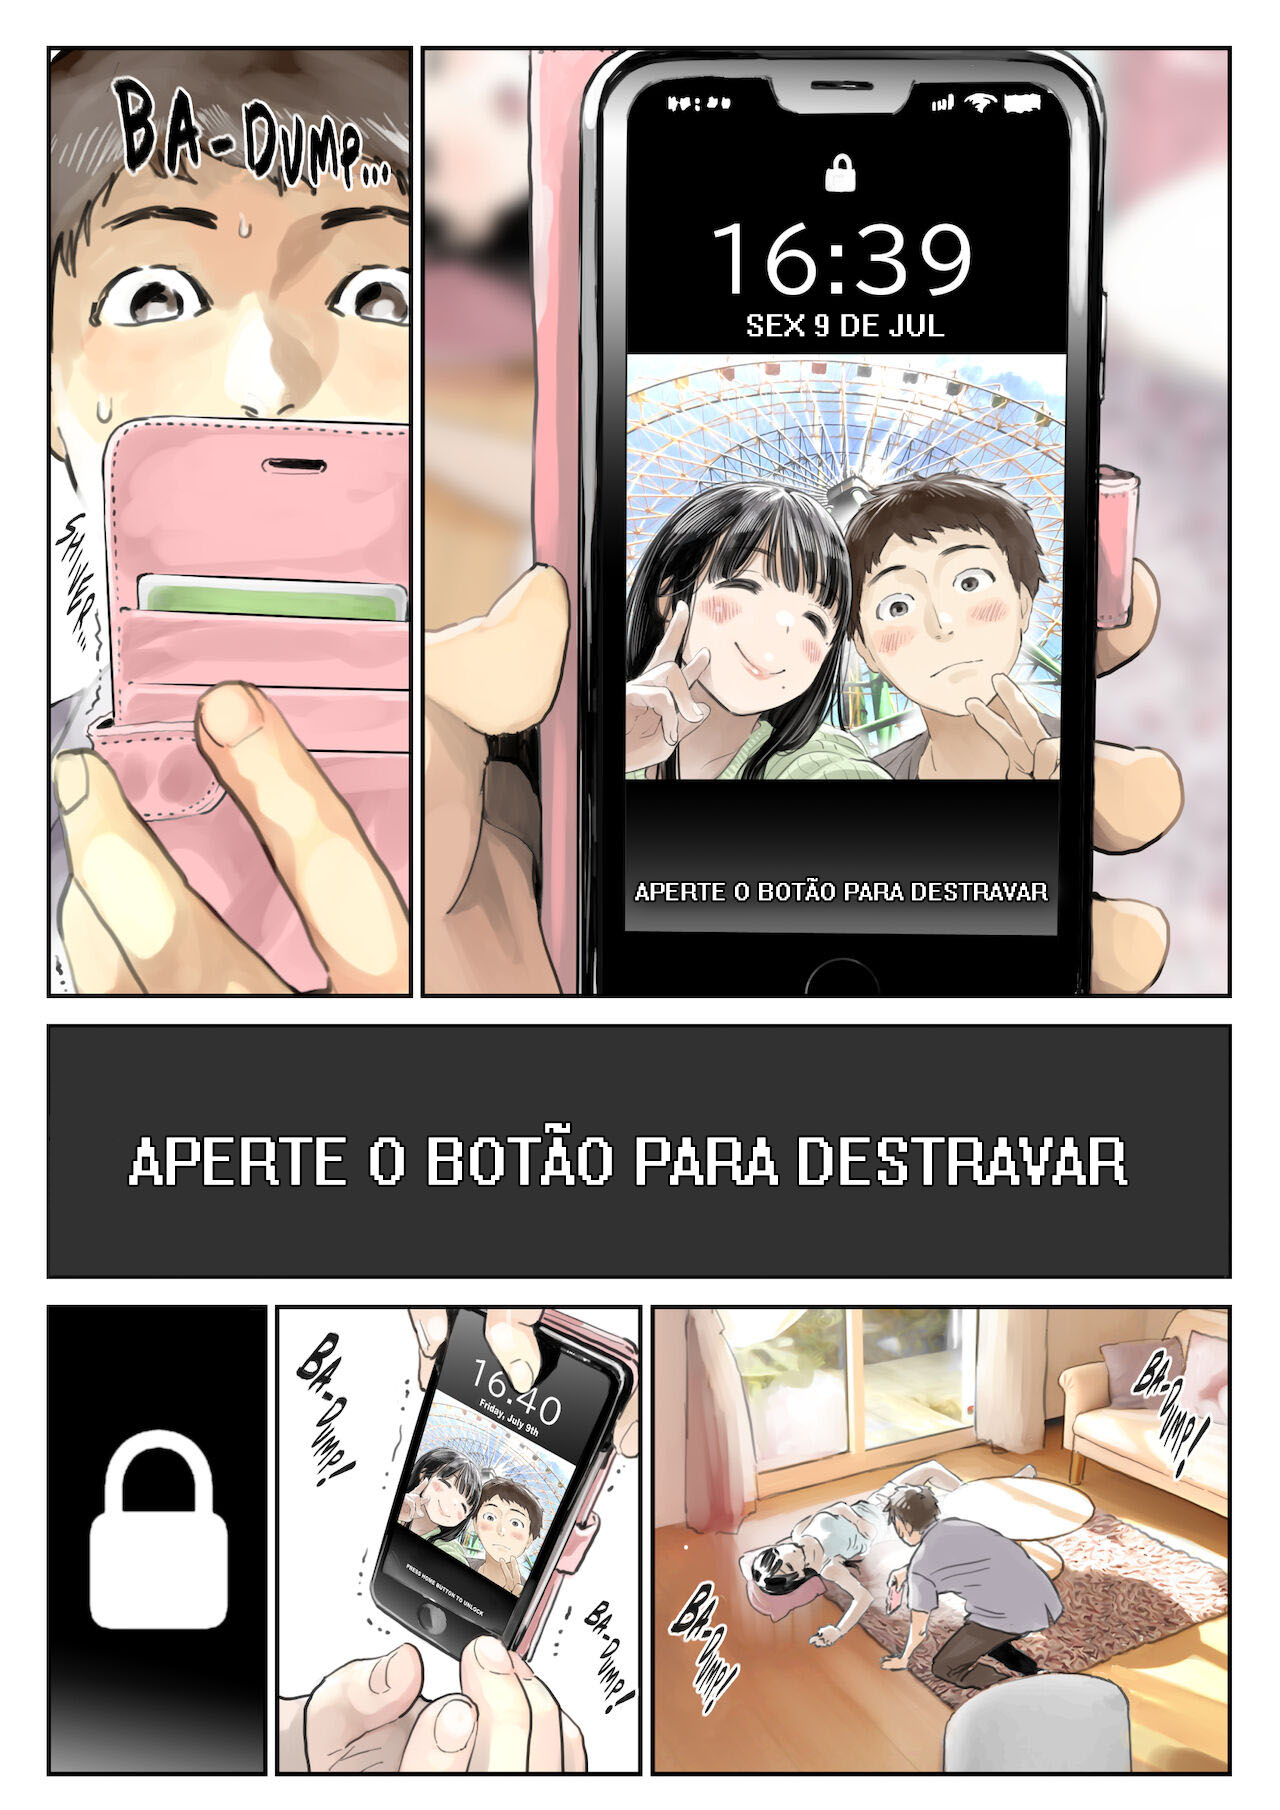 [Chocoro] Conseguir Espionar o Telefone da Minha Namorada [Sem Censura] - Foto 4